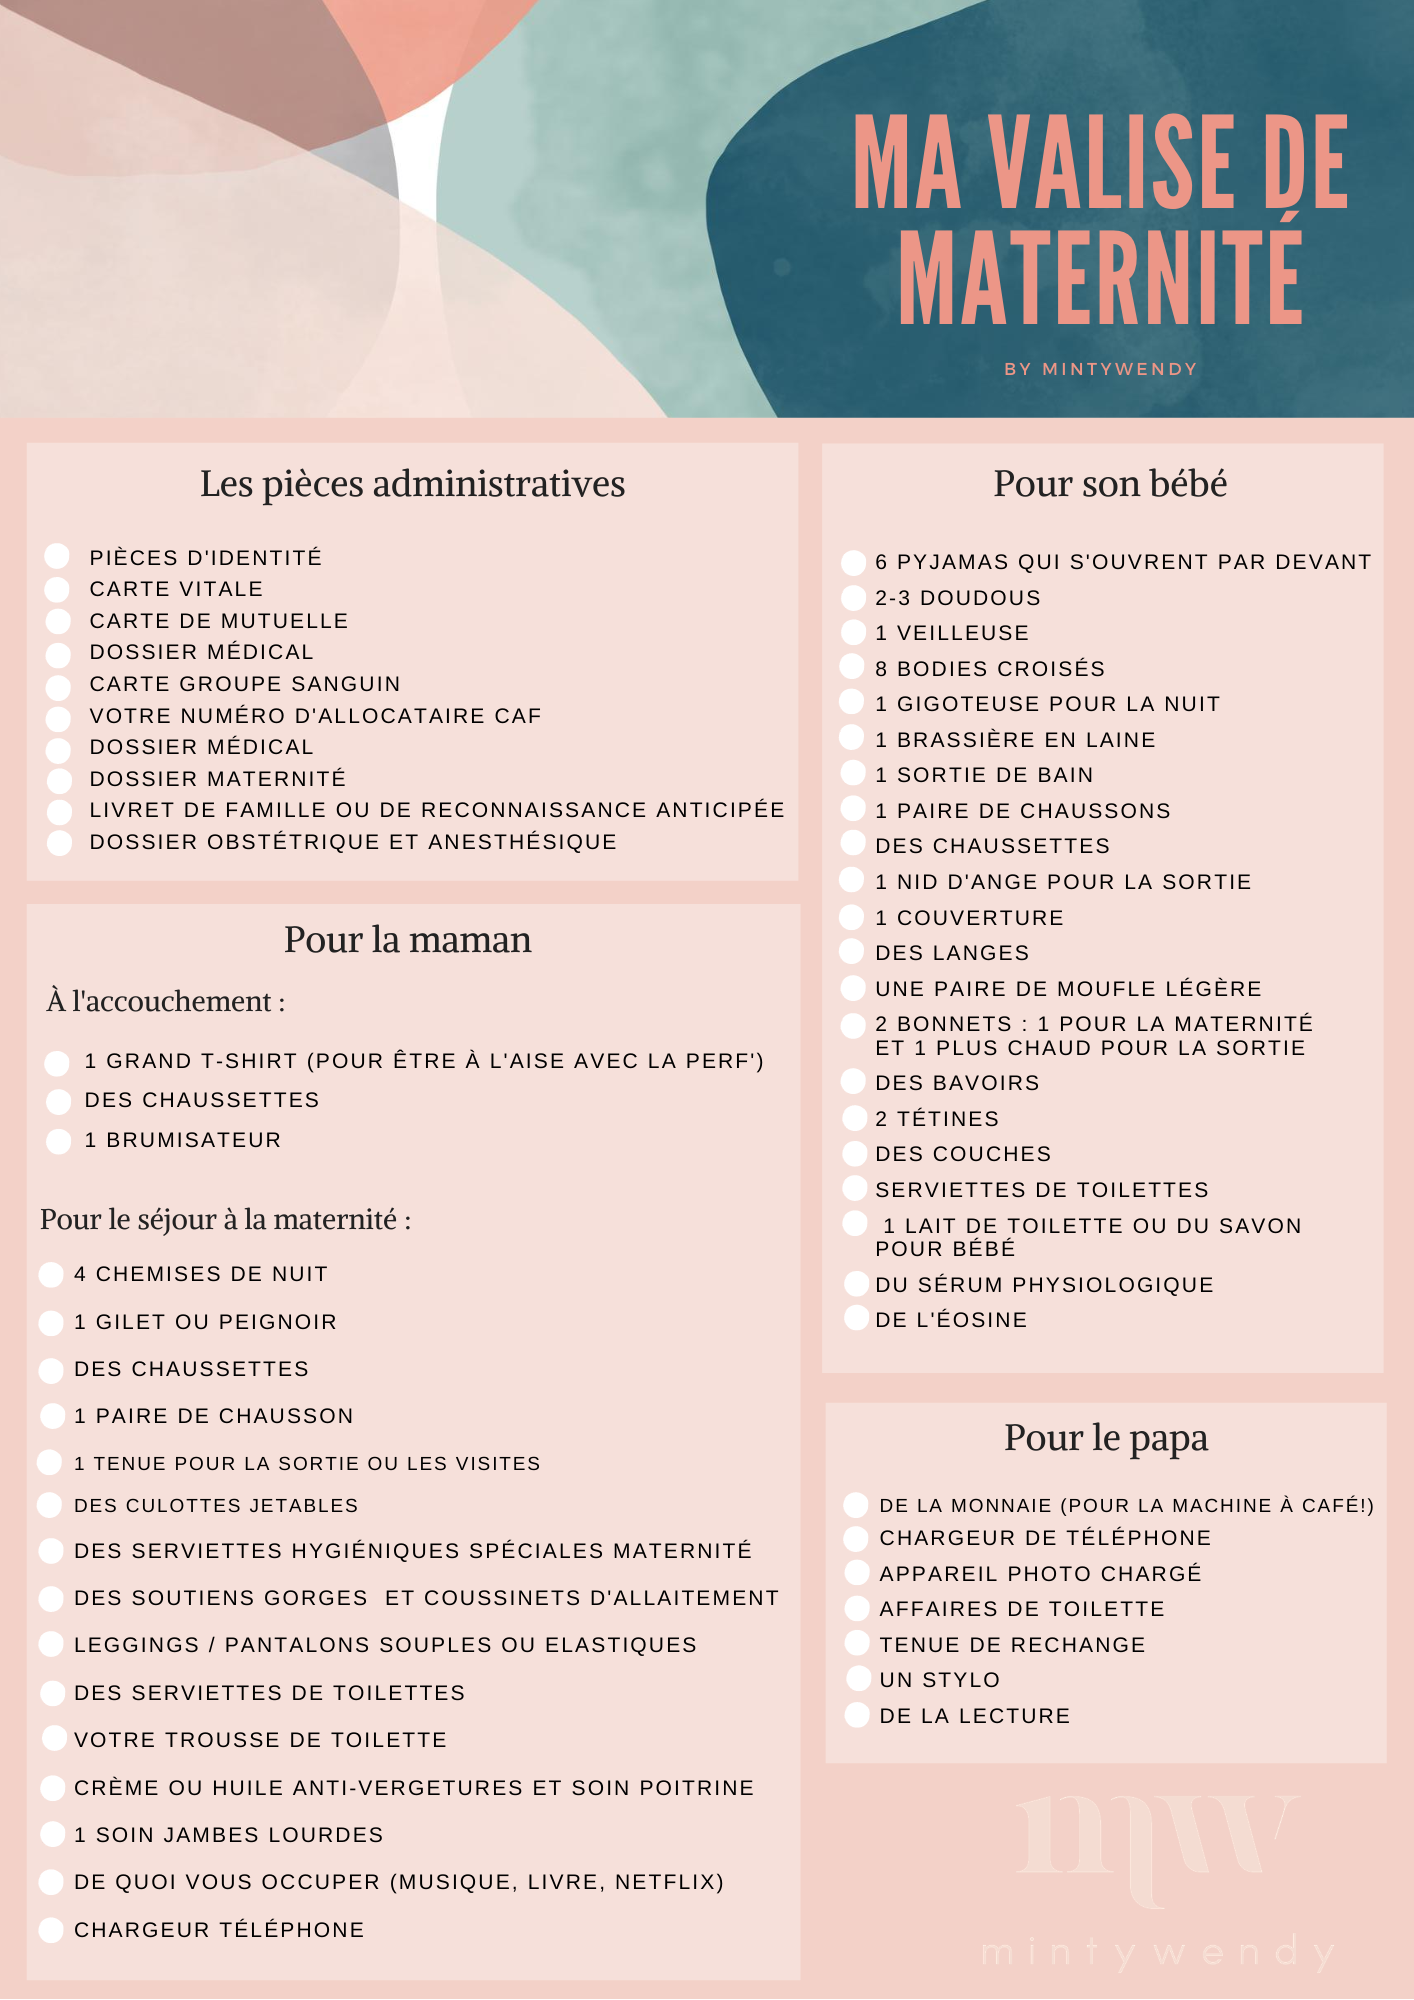 Liste Valise De Maternite Astuces Pour Ne Rien Oublier Mintywendy